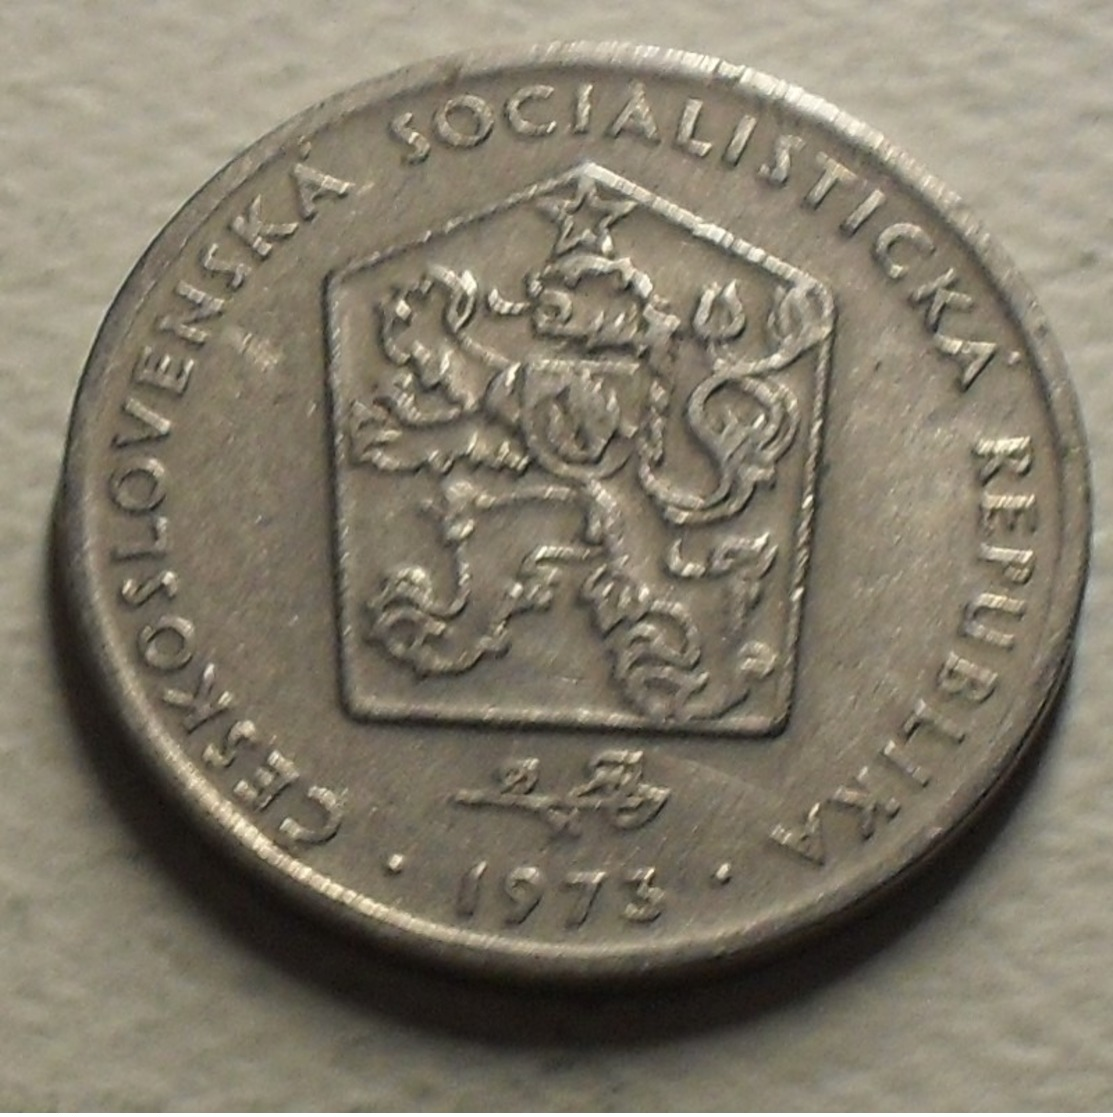 1973 - Tchécoslovaquie - Czechoslovakia - 2 KORUNY - KM 75 - Czechoslovakia